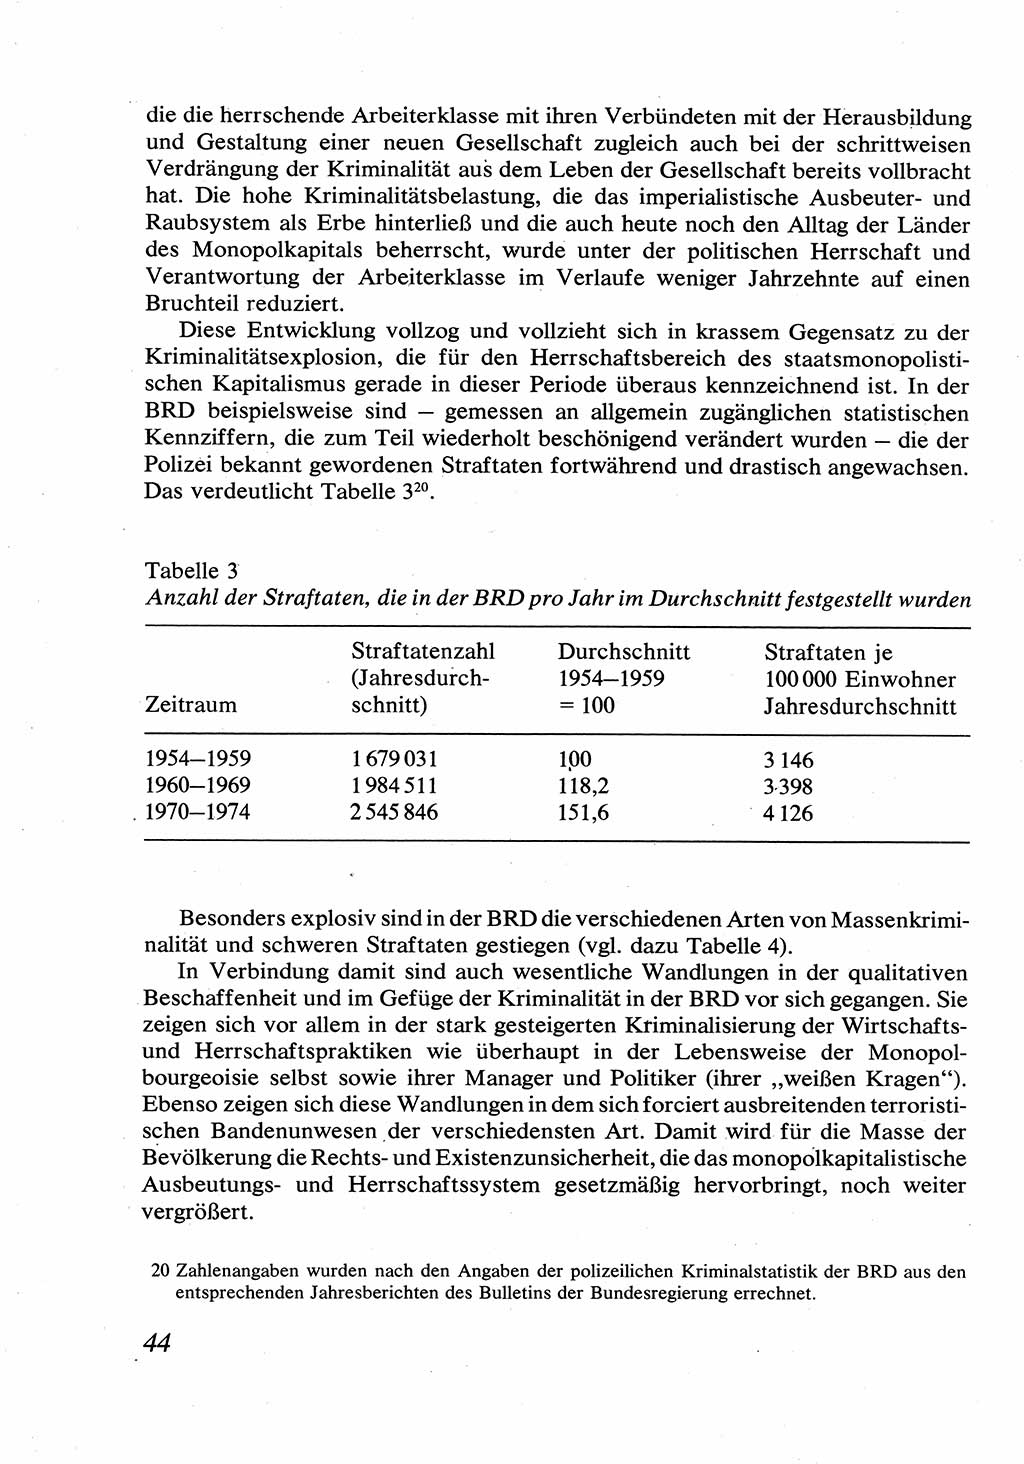 Strafrecht [Deutsche Demokratische Republik (DDR)], Allgemeiner Teil, Lehrbuch 1976, Seite 44 (Strafr. DDR AT Lb. 1976, S. 44)